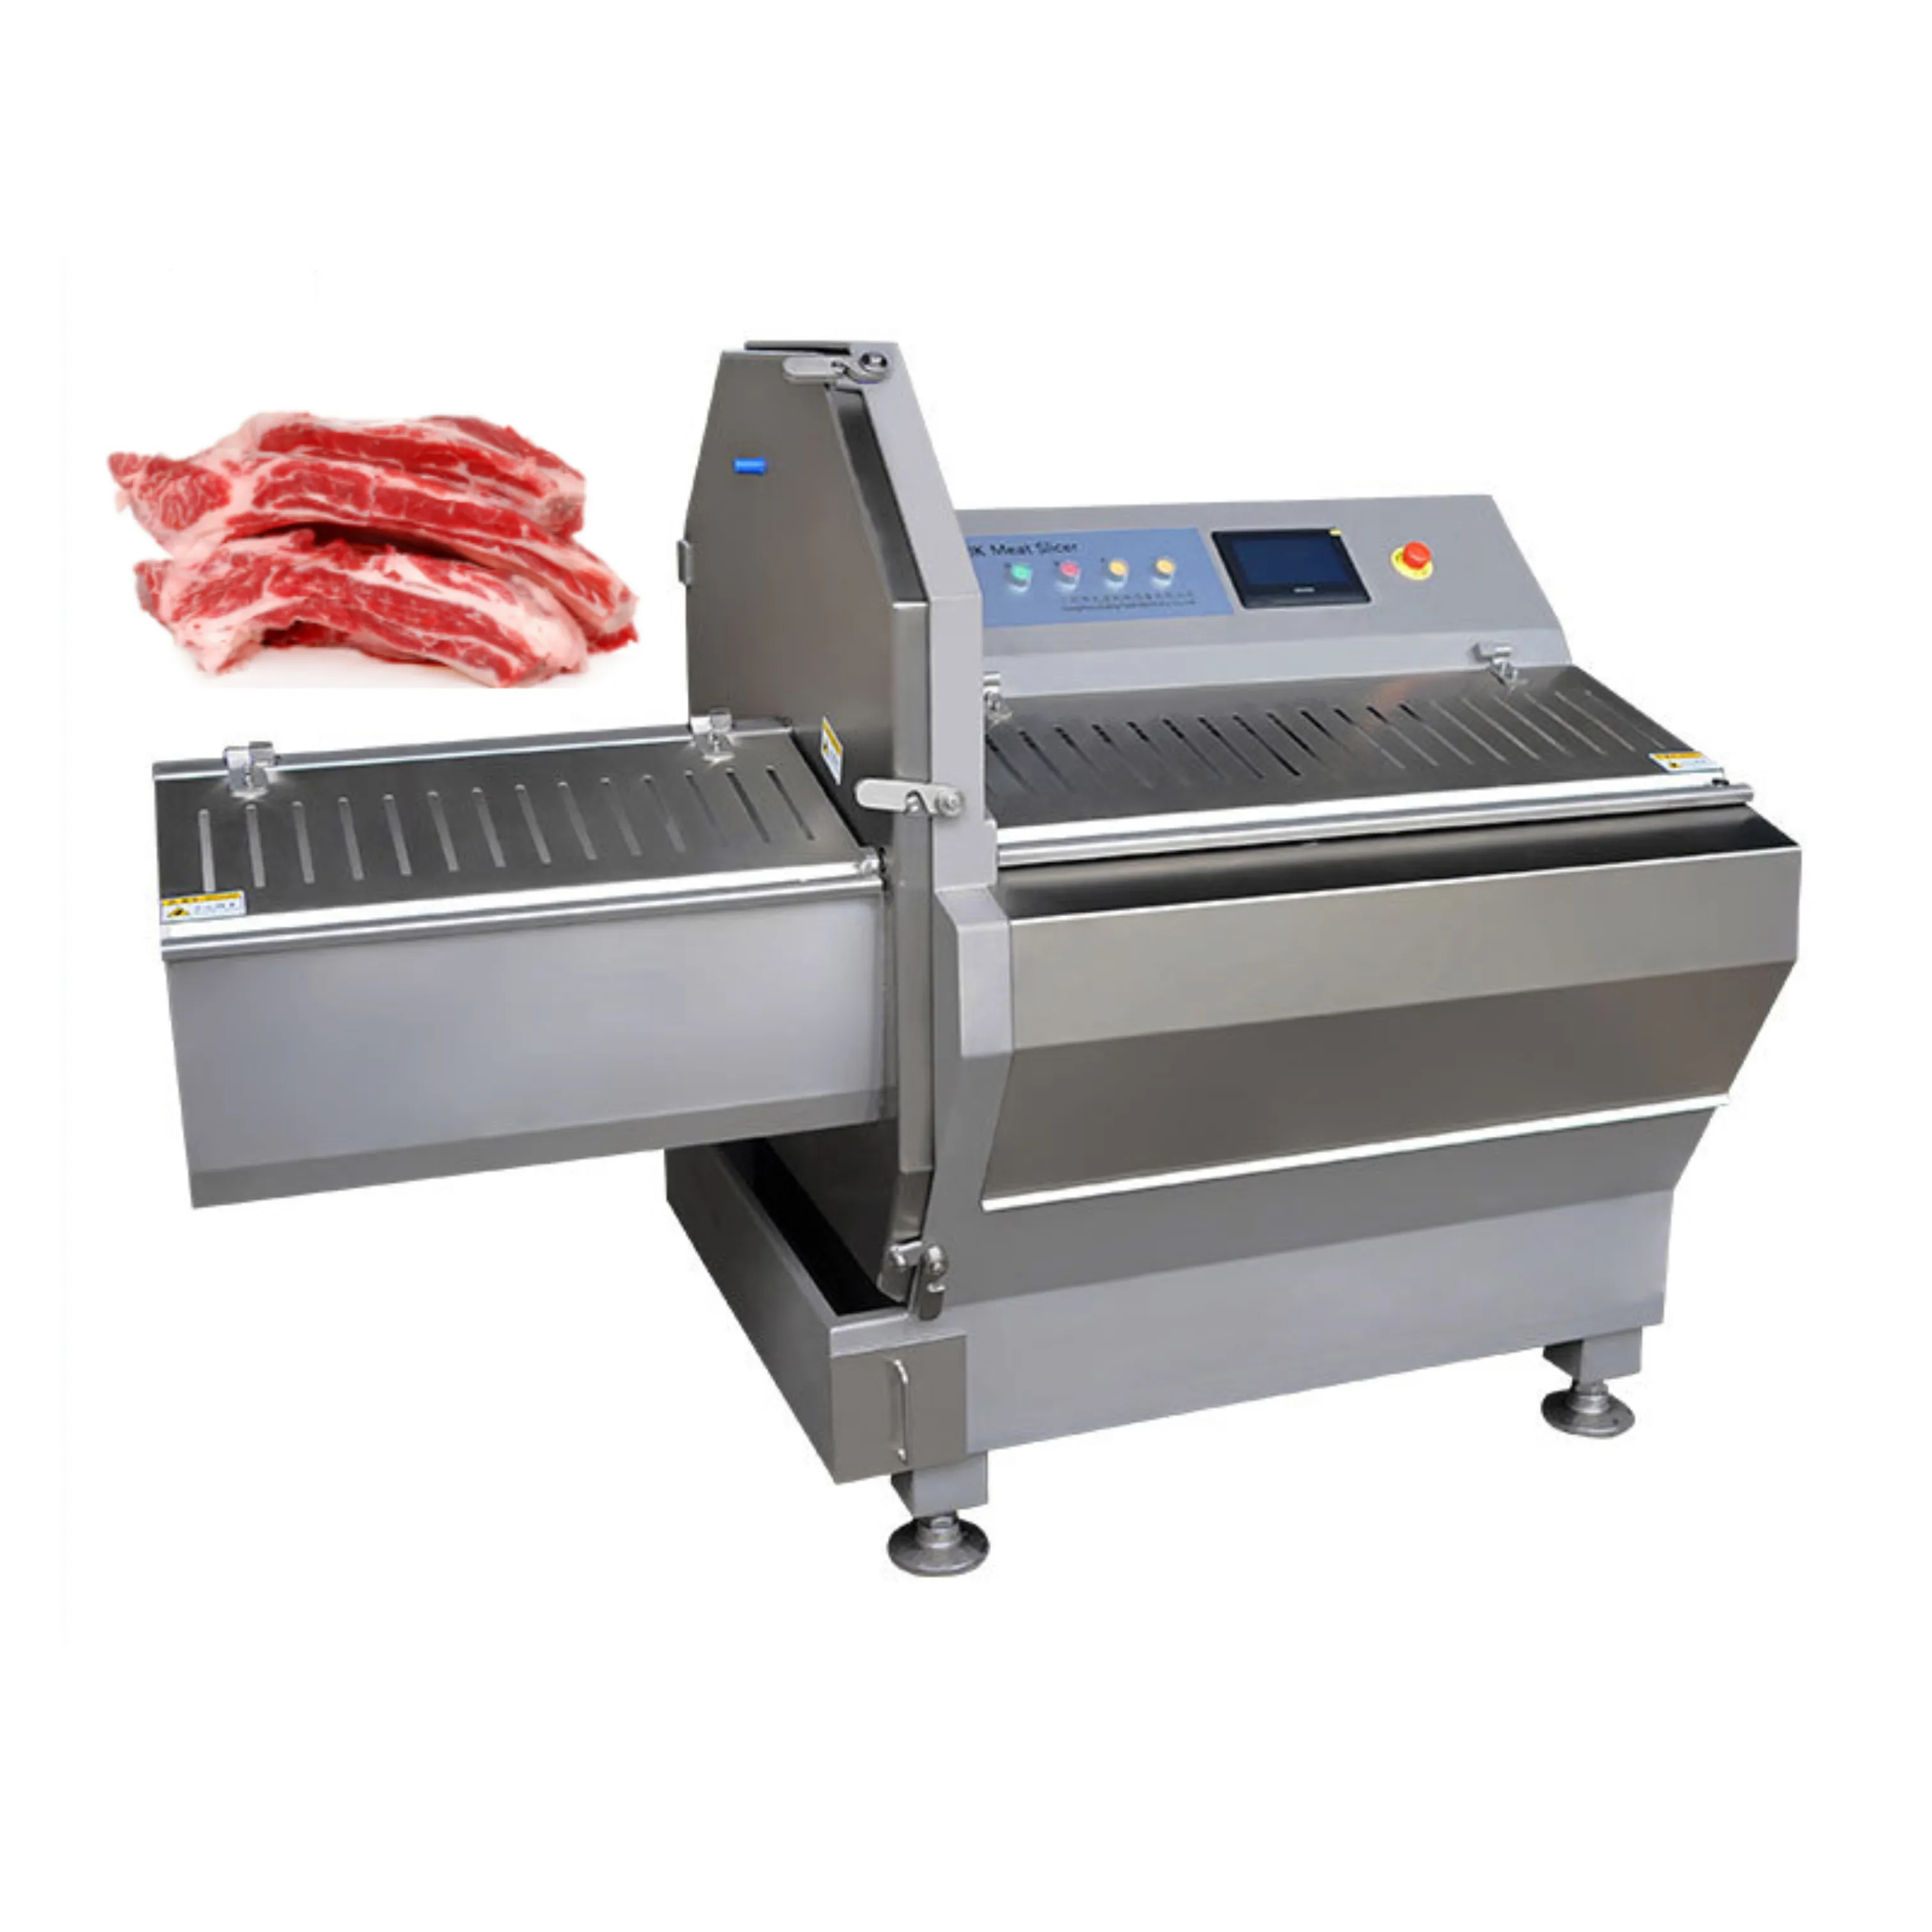 Youdo 기계 중국 공급 업체의 다목적 냉동 고기 쇠고기 슬라이스 기계